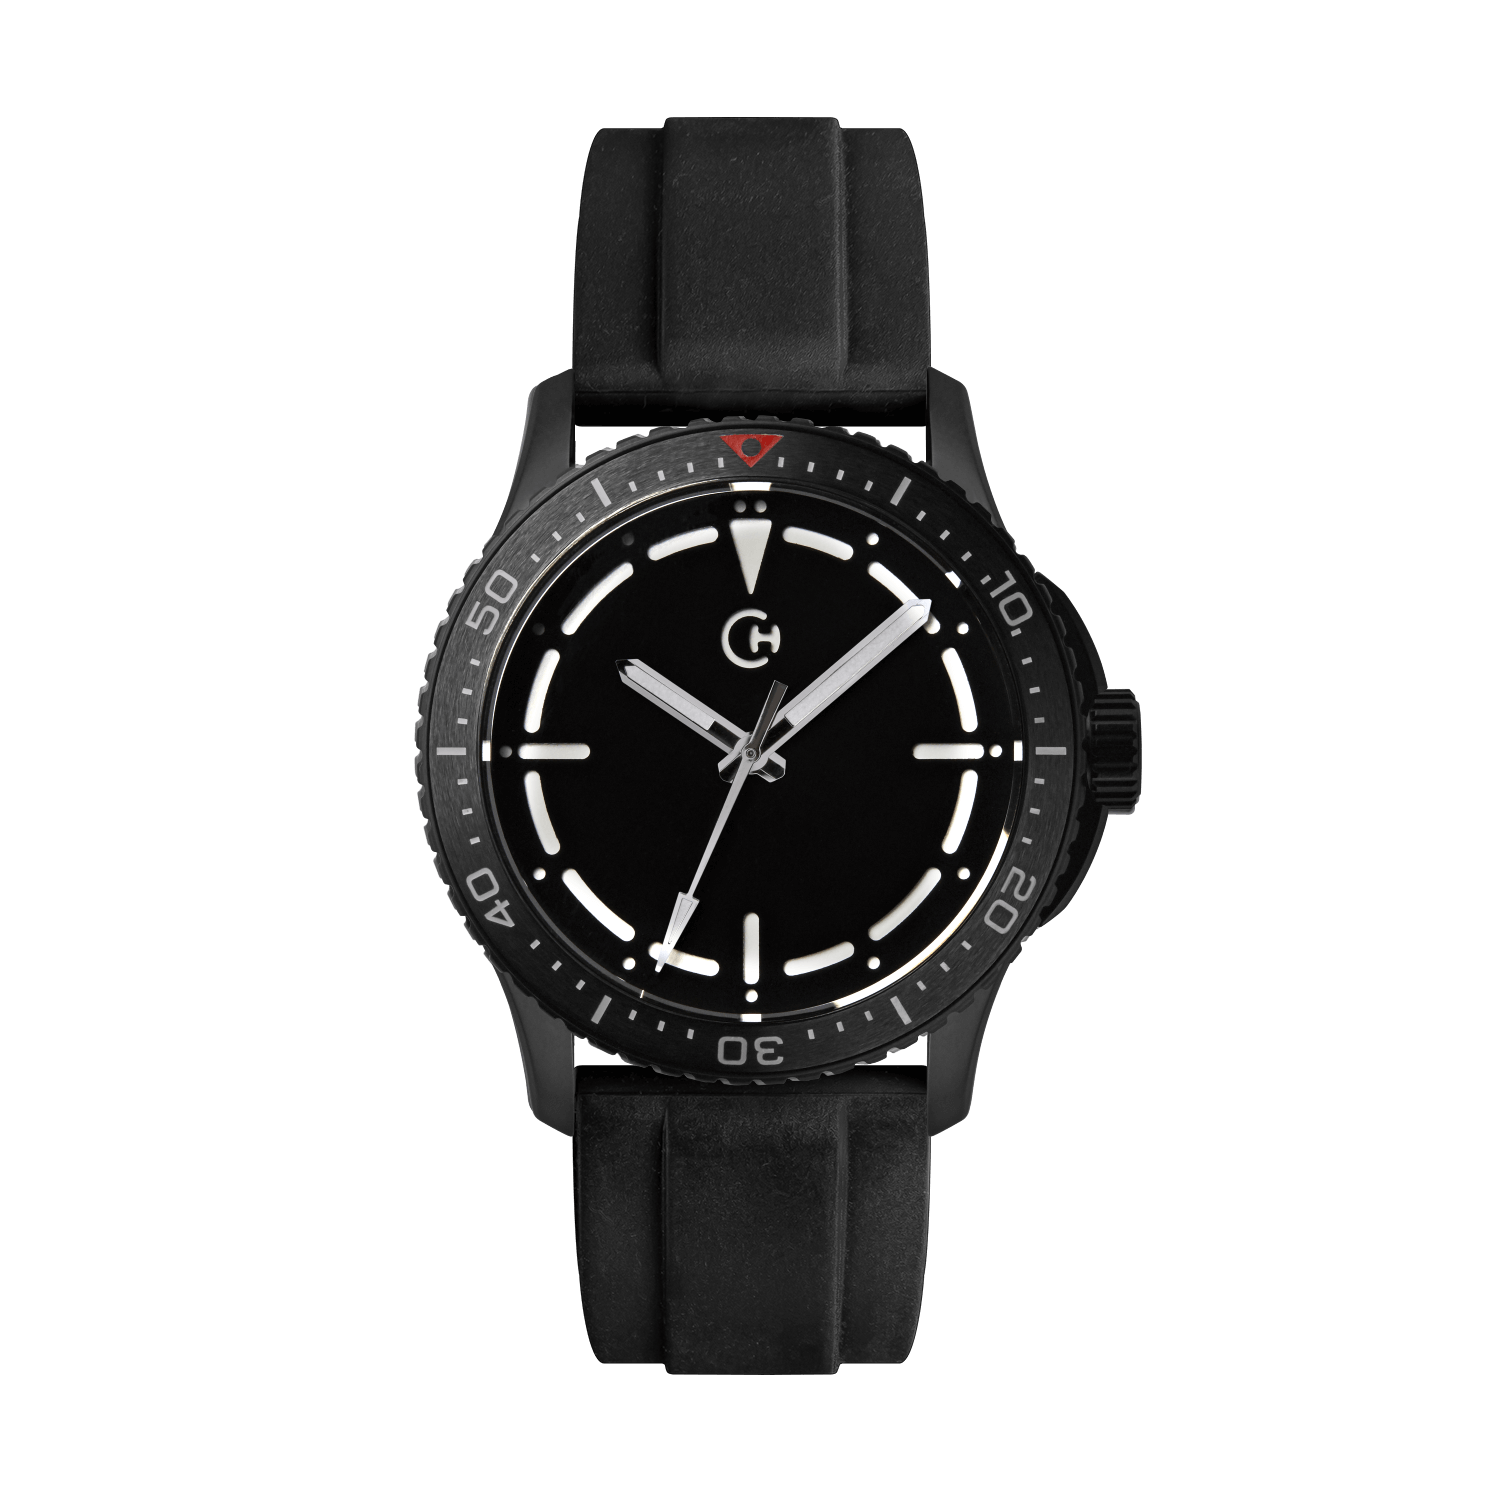 SeaQuest Dive černý gumový řemínek, 22mm, rychloupínací stěžejka, potápěčské hodinky Chronotechna bílý číselník, DLC pouzdro